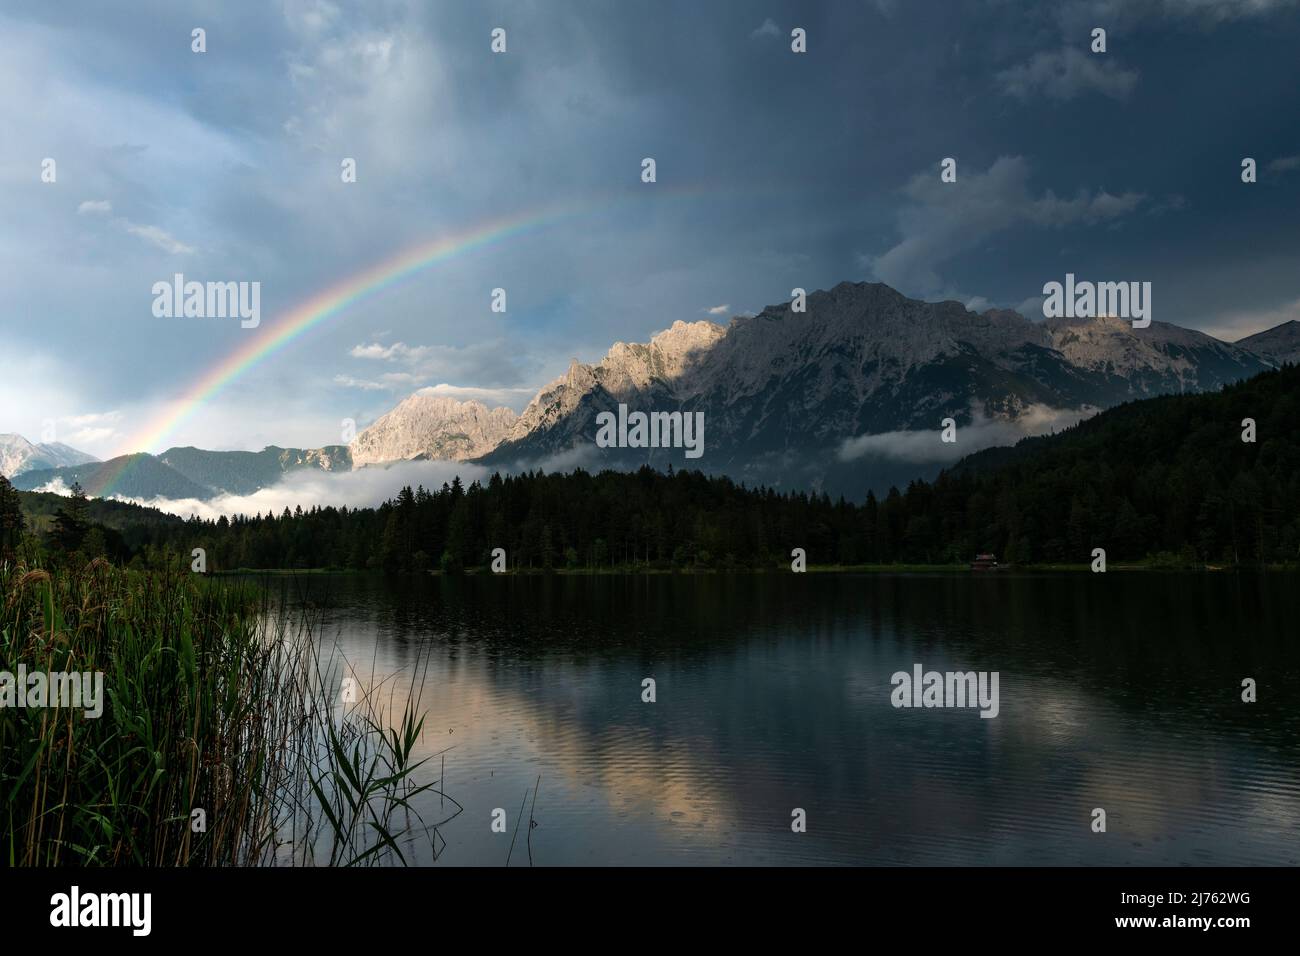 Der Lautersee, ein kleiner See in den bayerischen Alpen, oberhalb von Mittenwald. Im Hintergrund das Karwendel, bei Regen und Gewittern zieht sich ein Regenbogen über das Wasser. Stockfoto